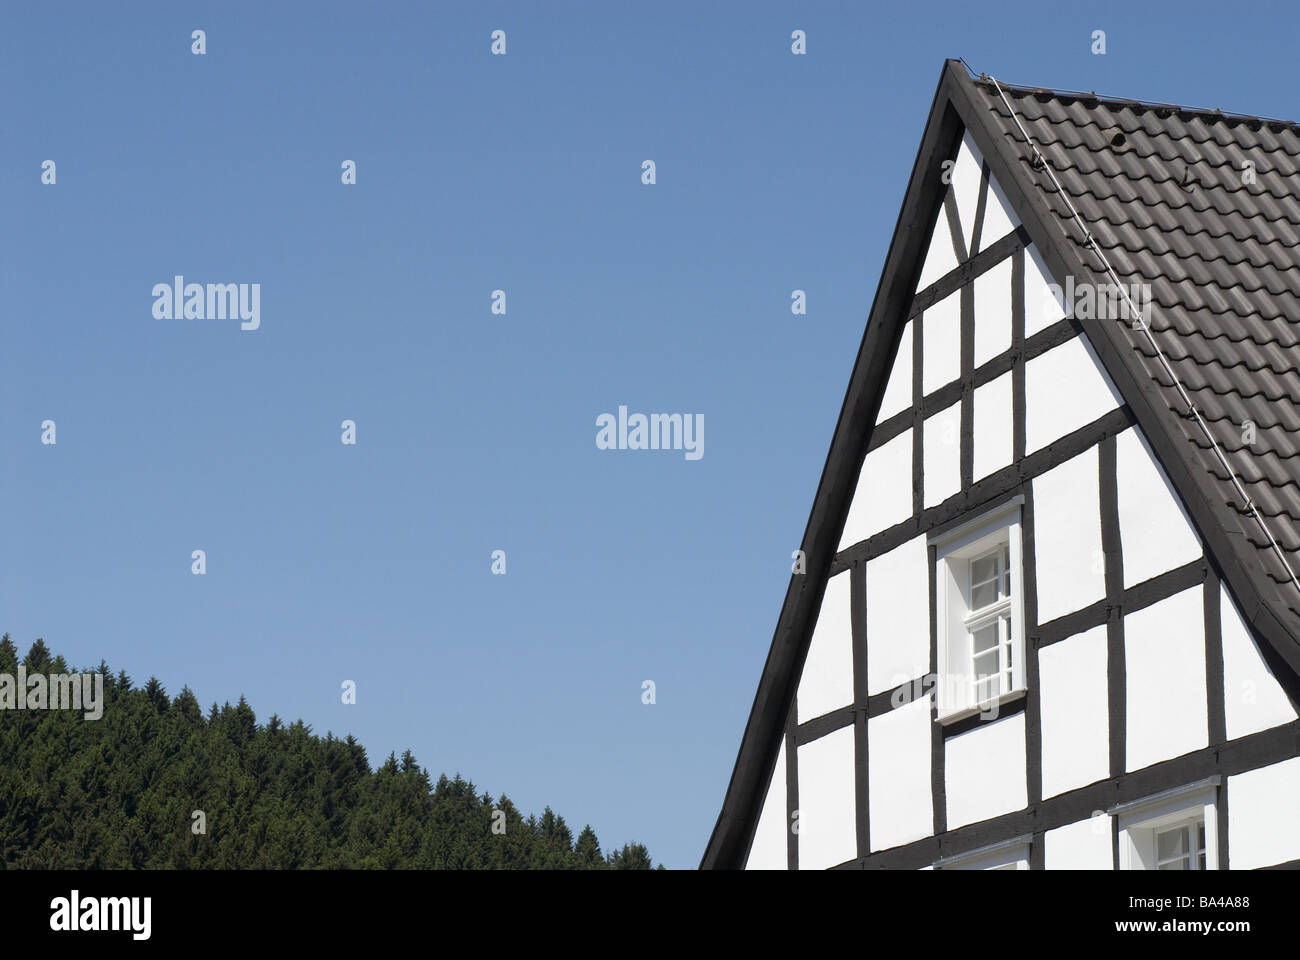 Timbering-house dettaglio windows rung-windows tetto di tegole del tetto cieli alberi forestali Germania Bergisches paese nord Foto Stock